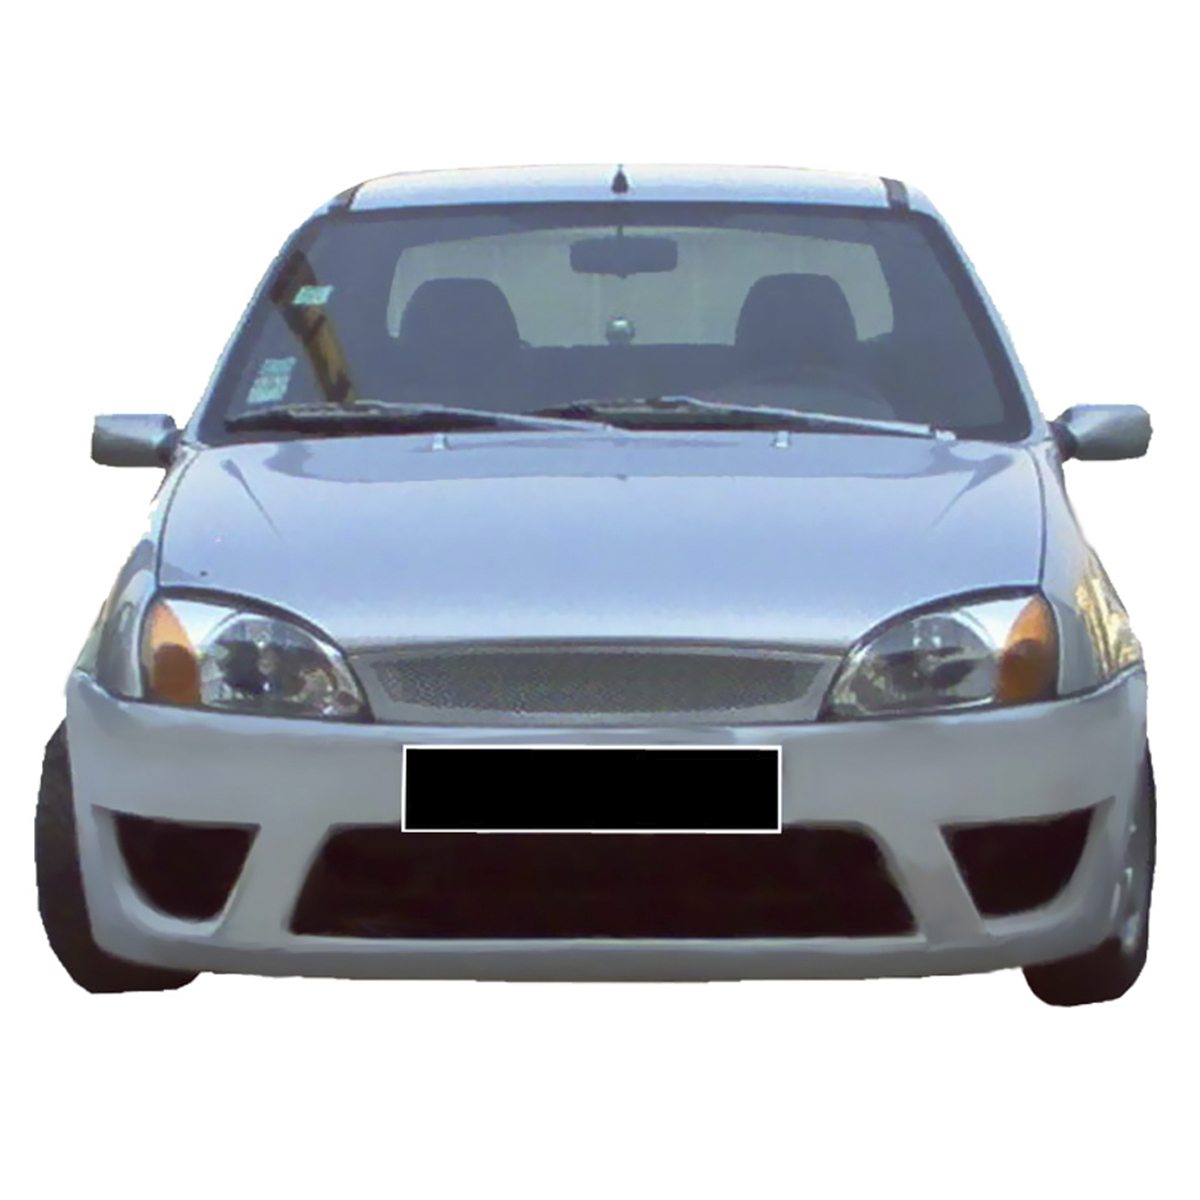 Ford-Fiesta-99-02-Pulsar-Frt-PCR012